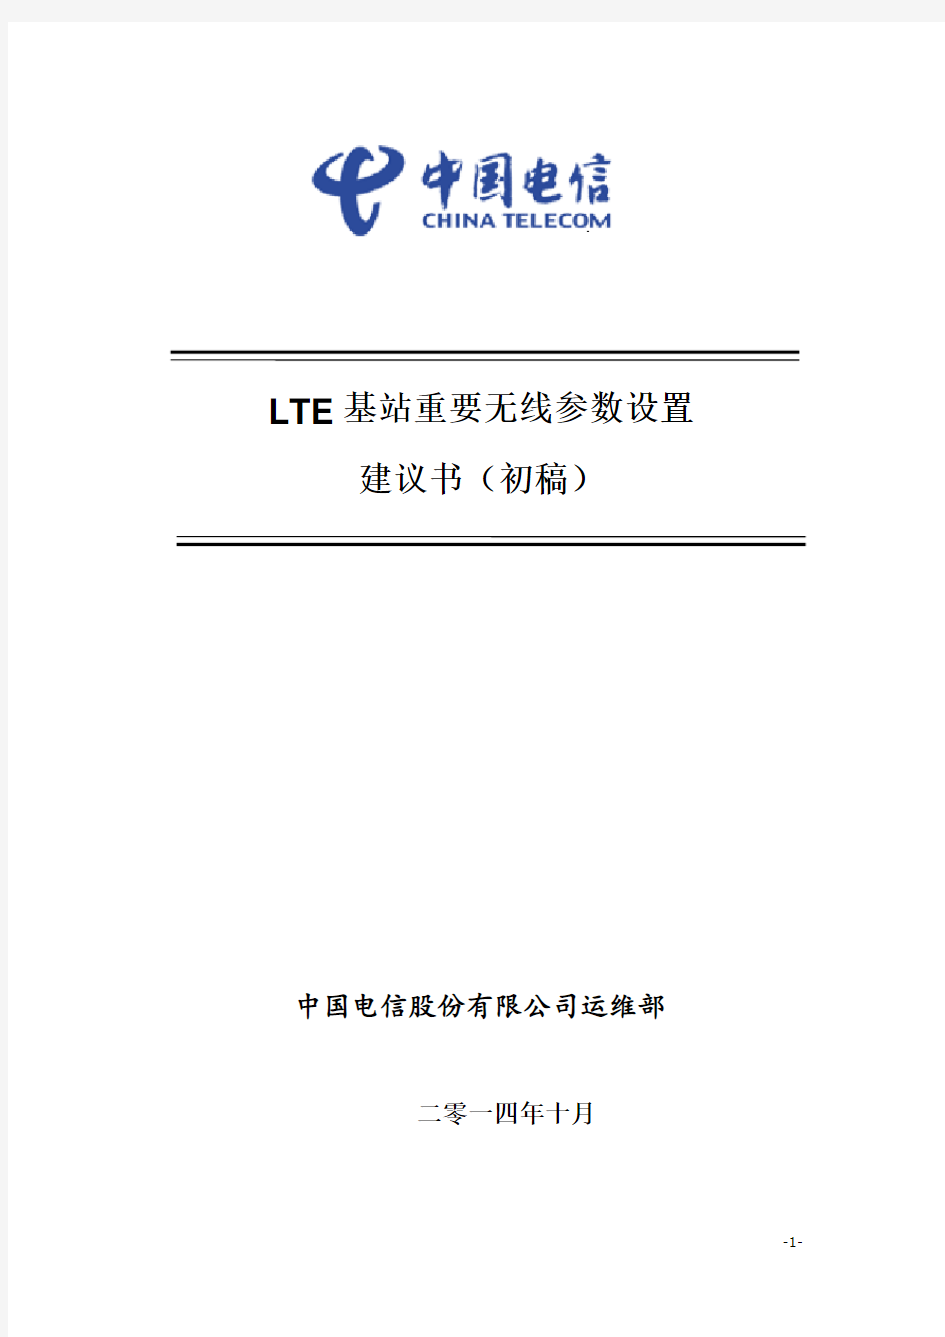 LTE基站重要无线参数设置(参数位置-中兴)